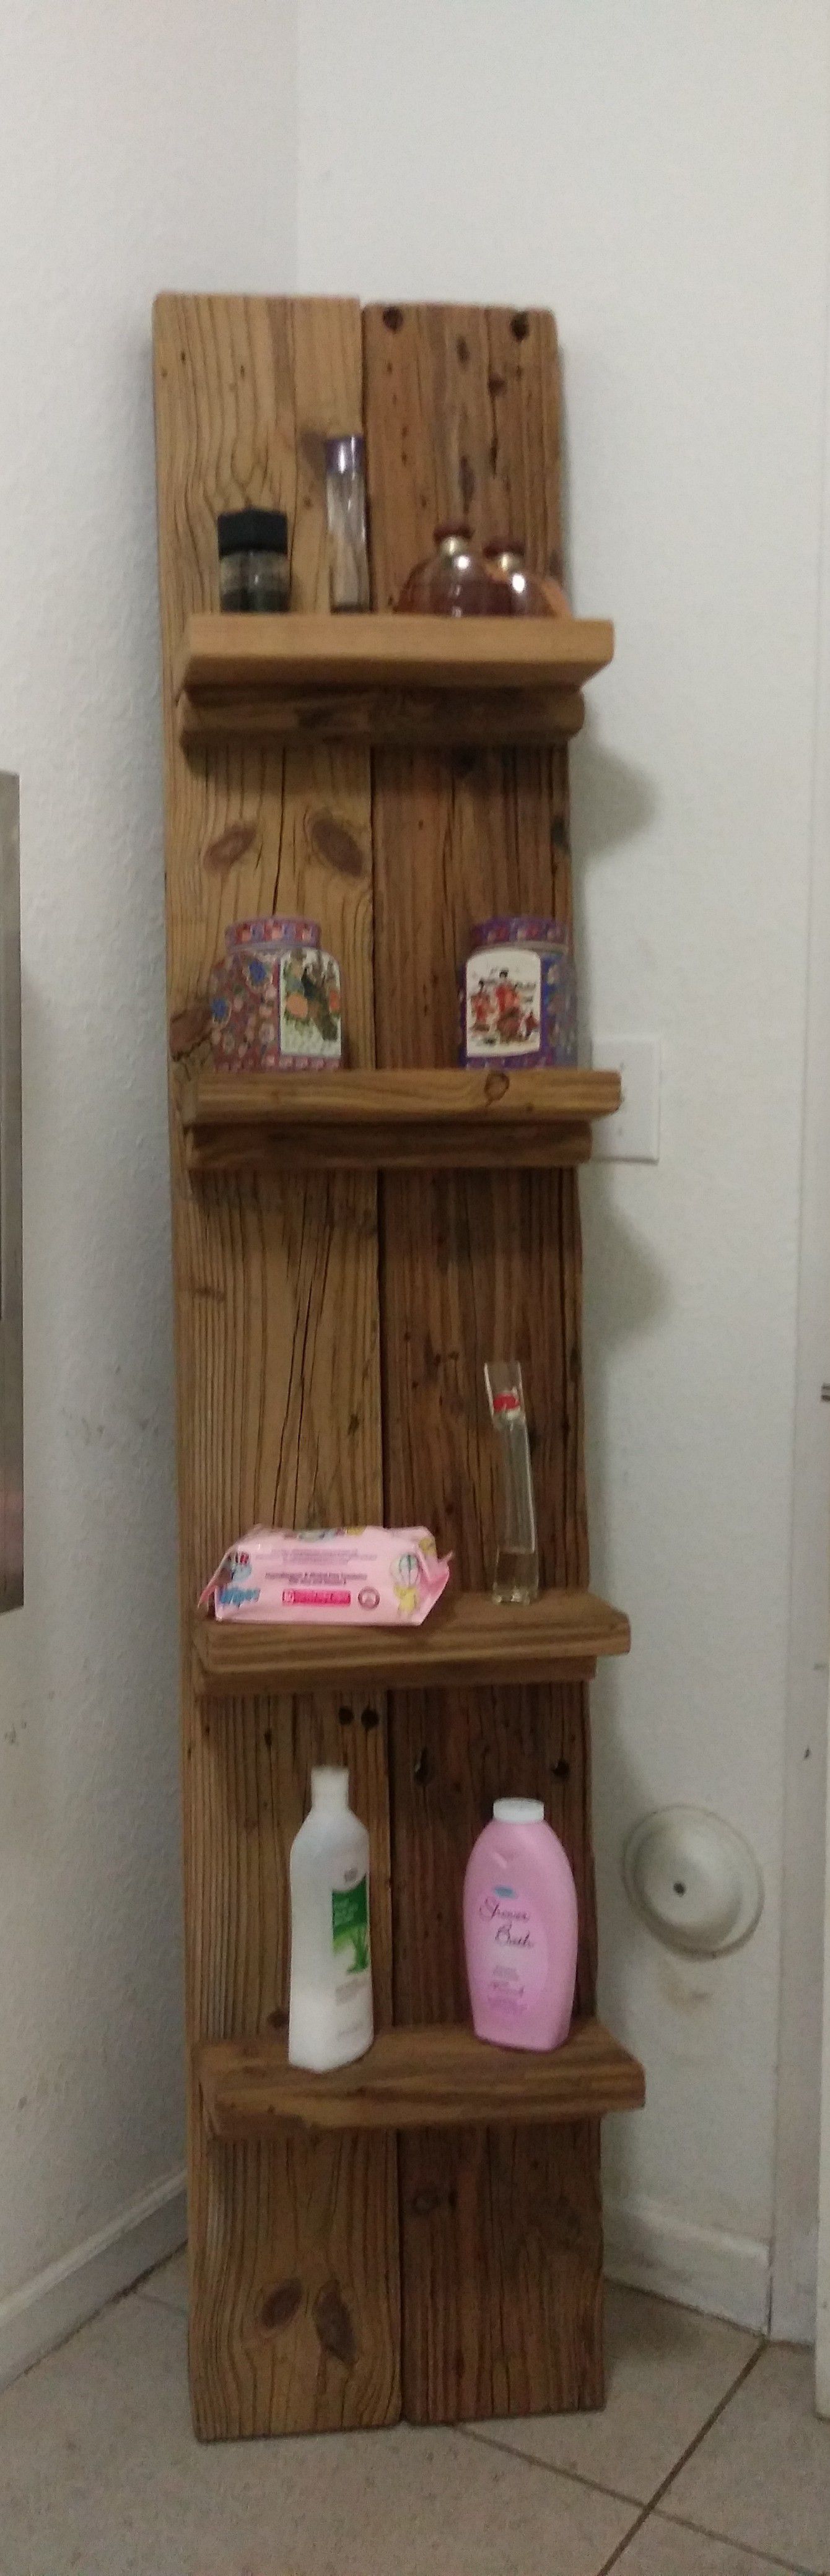 Wooden shelf. Driftwood texture.